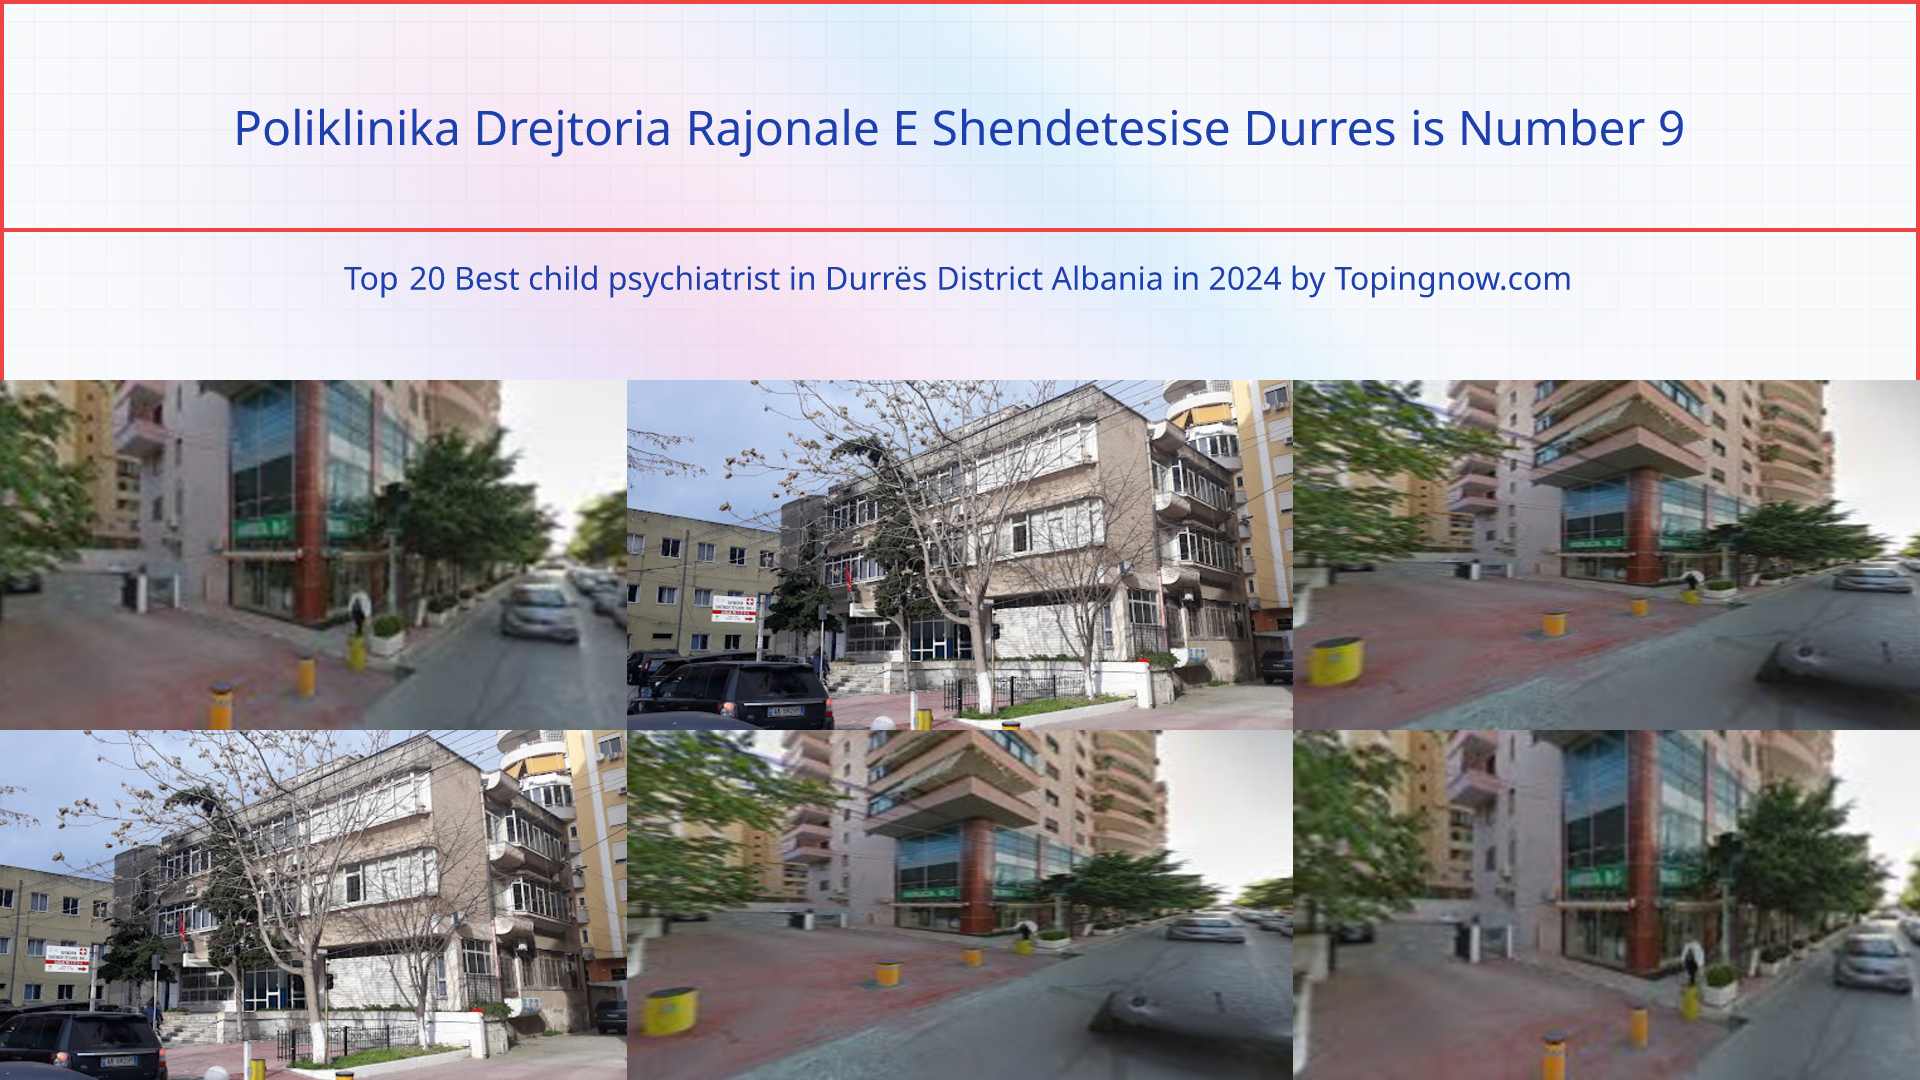 Poliklinika Drejtoria Rajonale E Shendetesise Durres: Top 20 Best child psychiatrist in Durrës District Albania in 2024